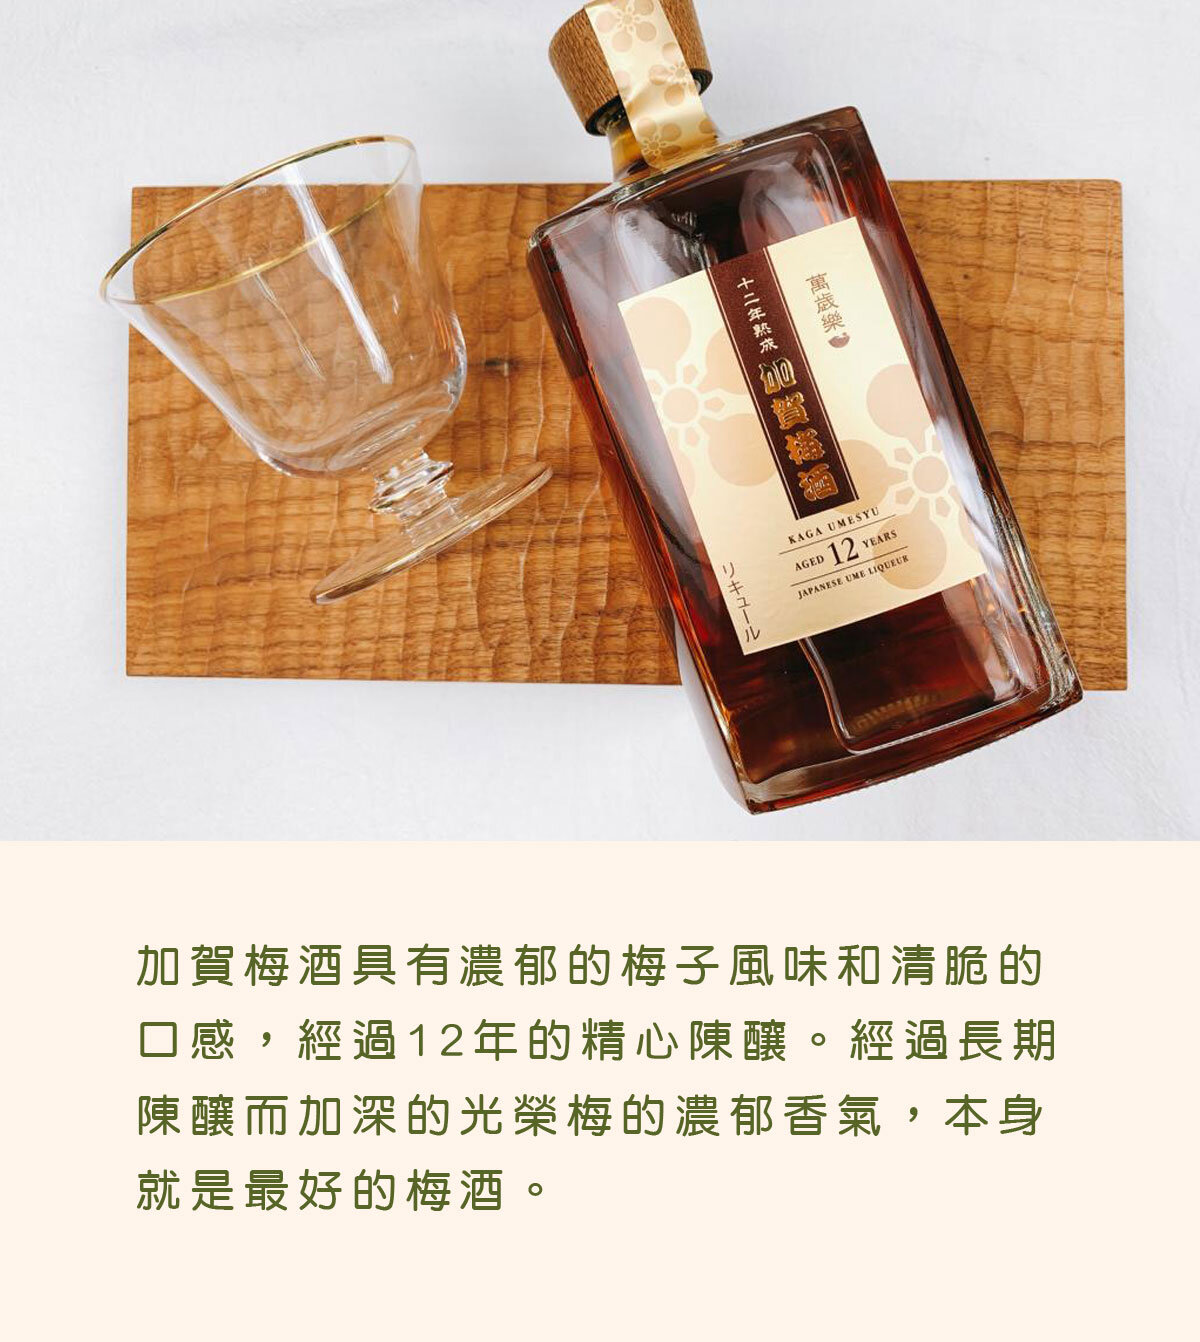 萬歳楽| 萬歳楽加賀梅酒十二年熟成(有盒) 750ml | HKTVmall 香港最大 